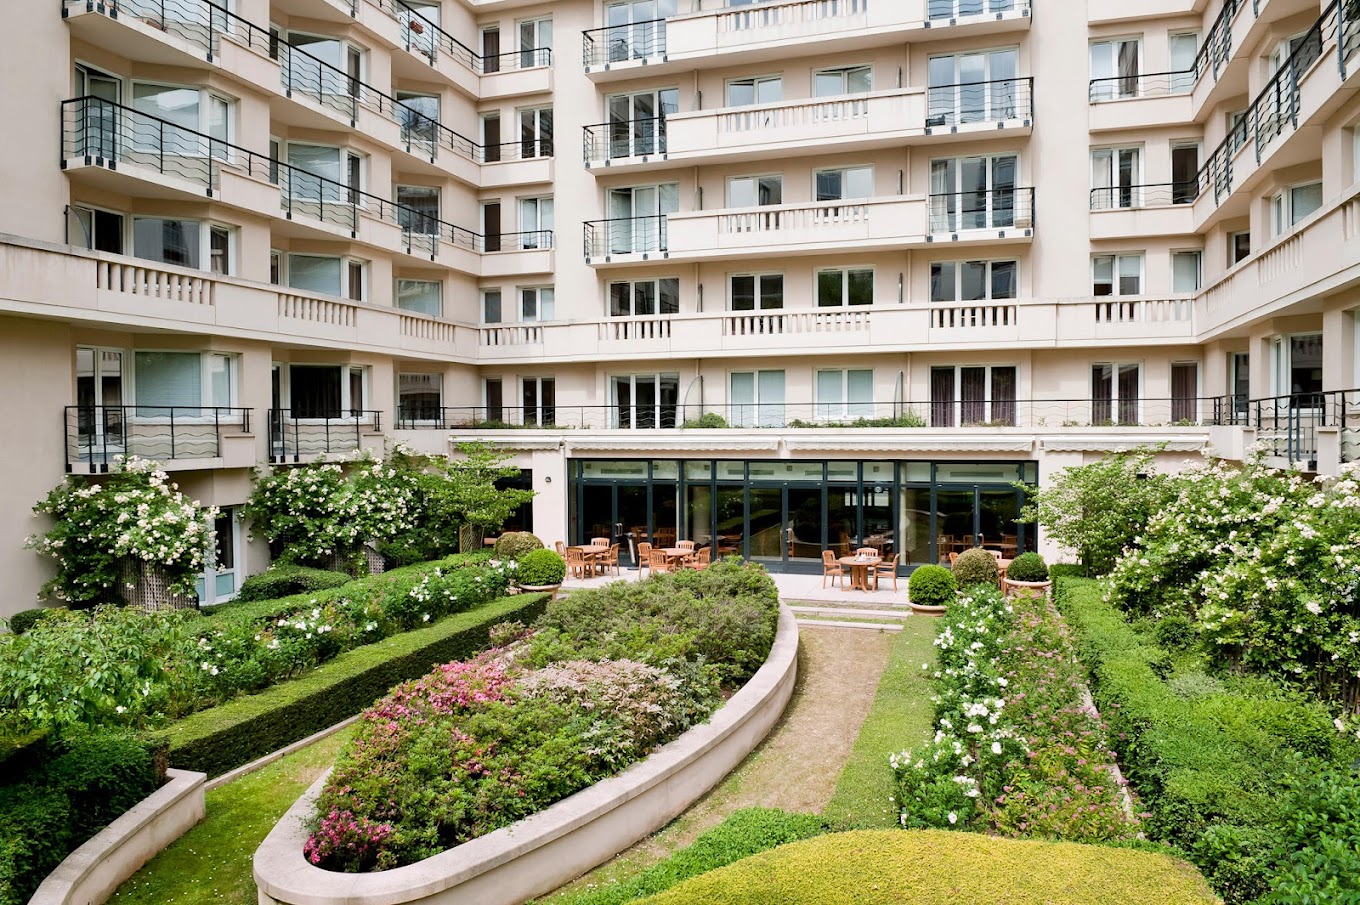 Otelin misafirlerin kullanımına özel bahçe terası mevcuttur. 